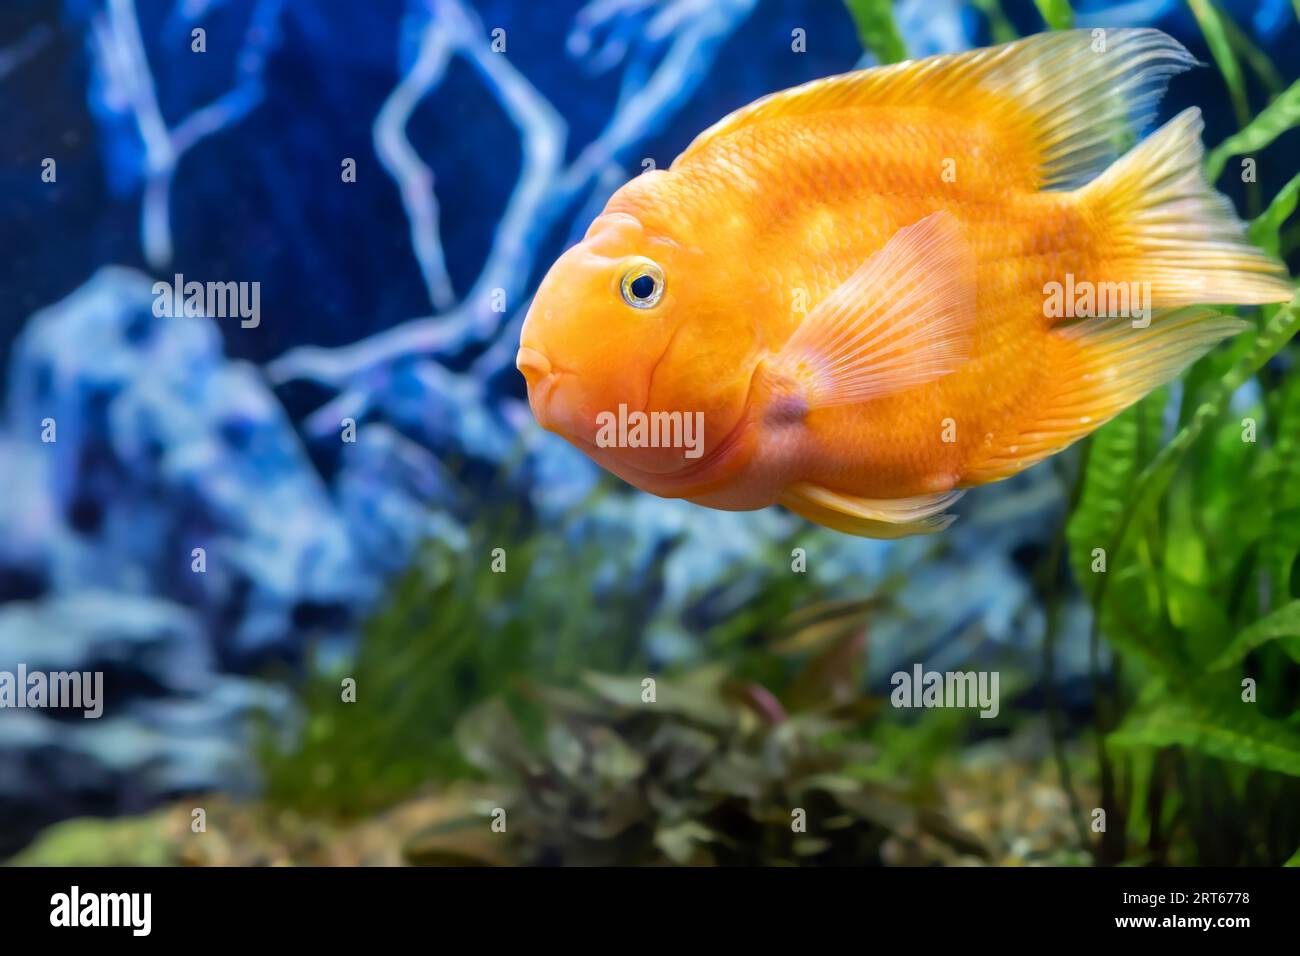 Orange parrot fish in the aquarium. Red Parrot Cichlid. Aquarium fish. Stock Photo